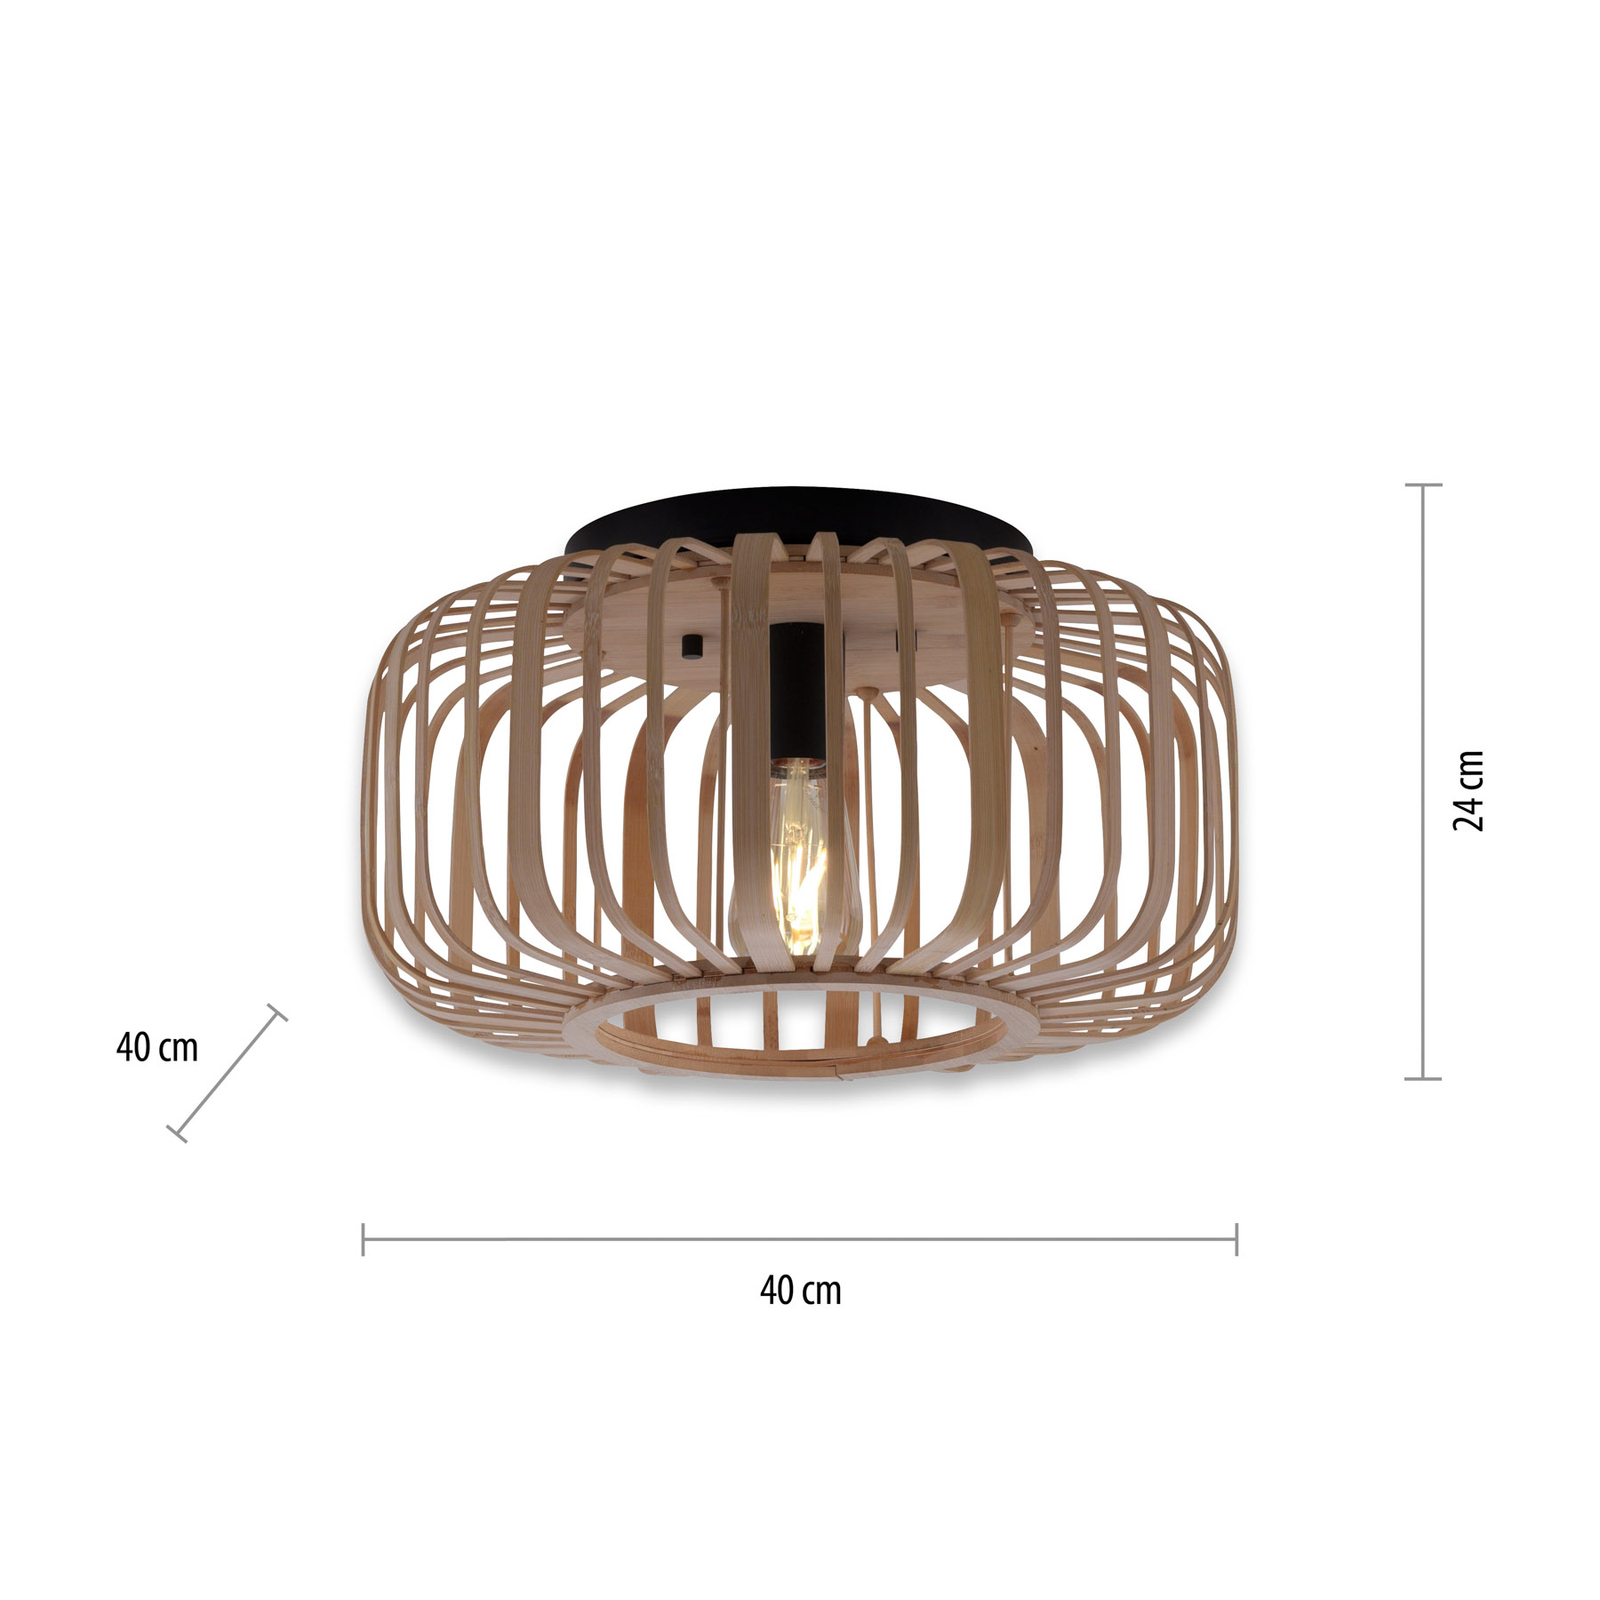 Deckenlampe Racoon aus Holz, dicke Streben, Ø 42cm